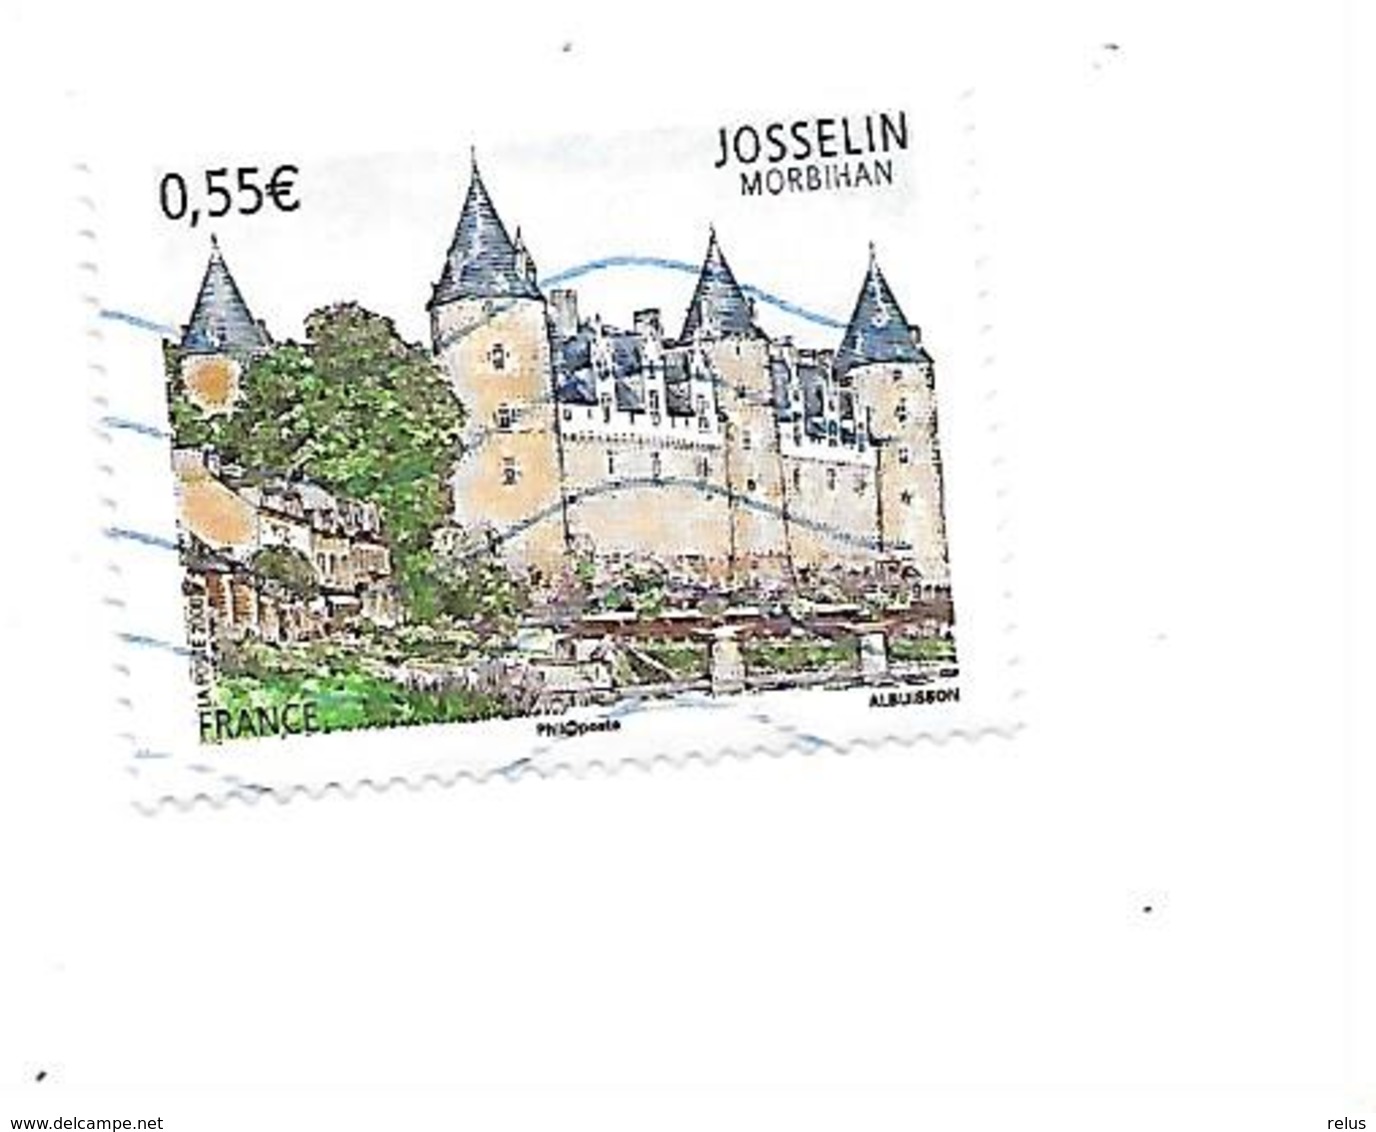 Série Touristique Josselin N°4281 Oblitéré Année 2008 - Gebraucht